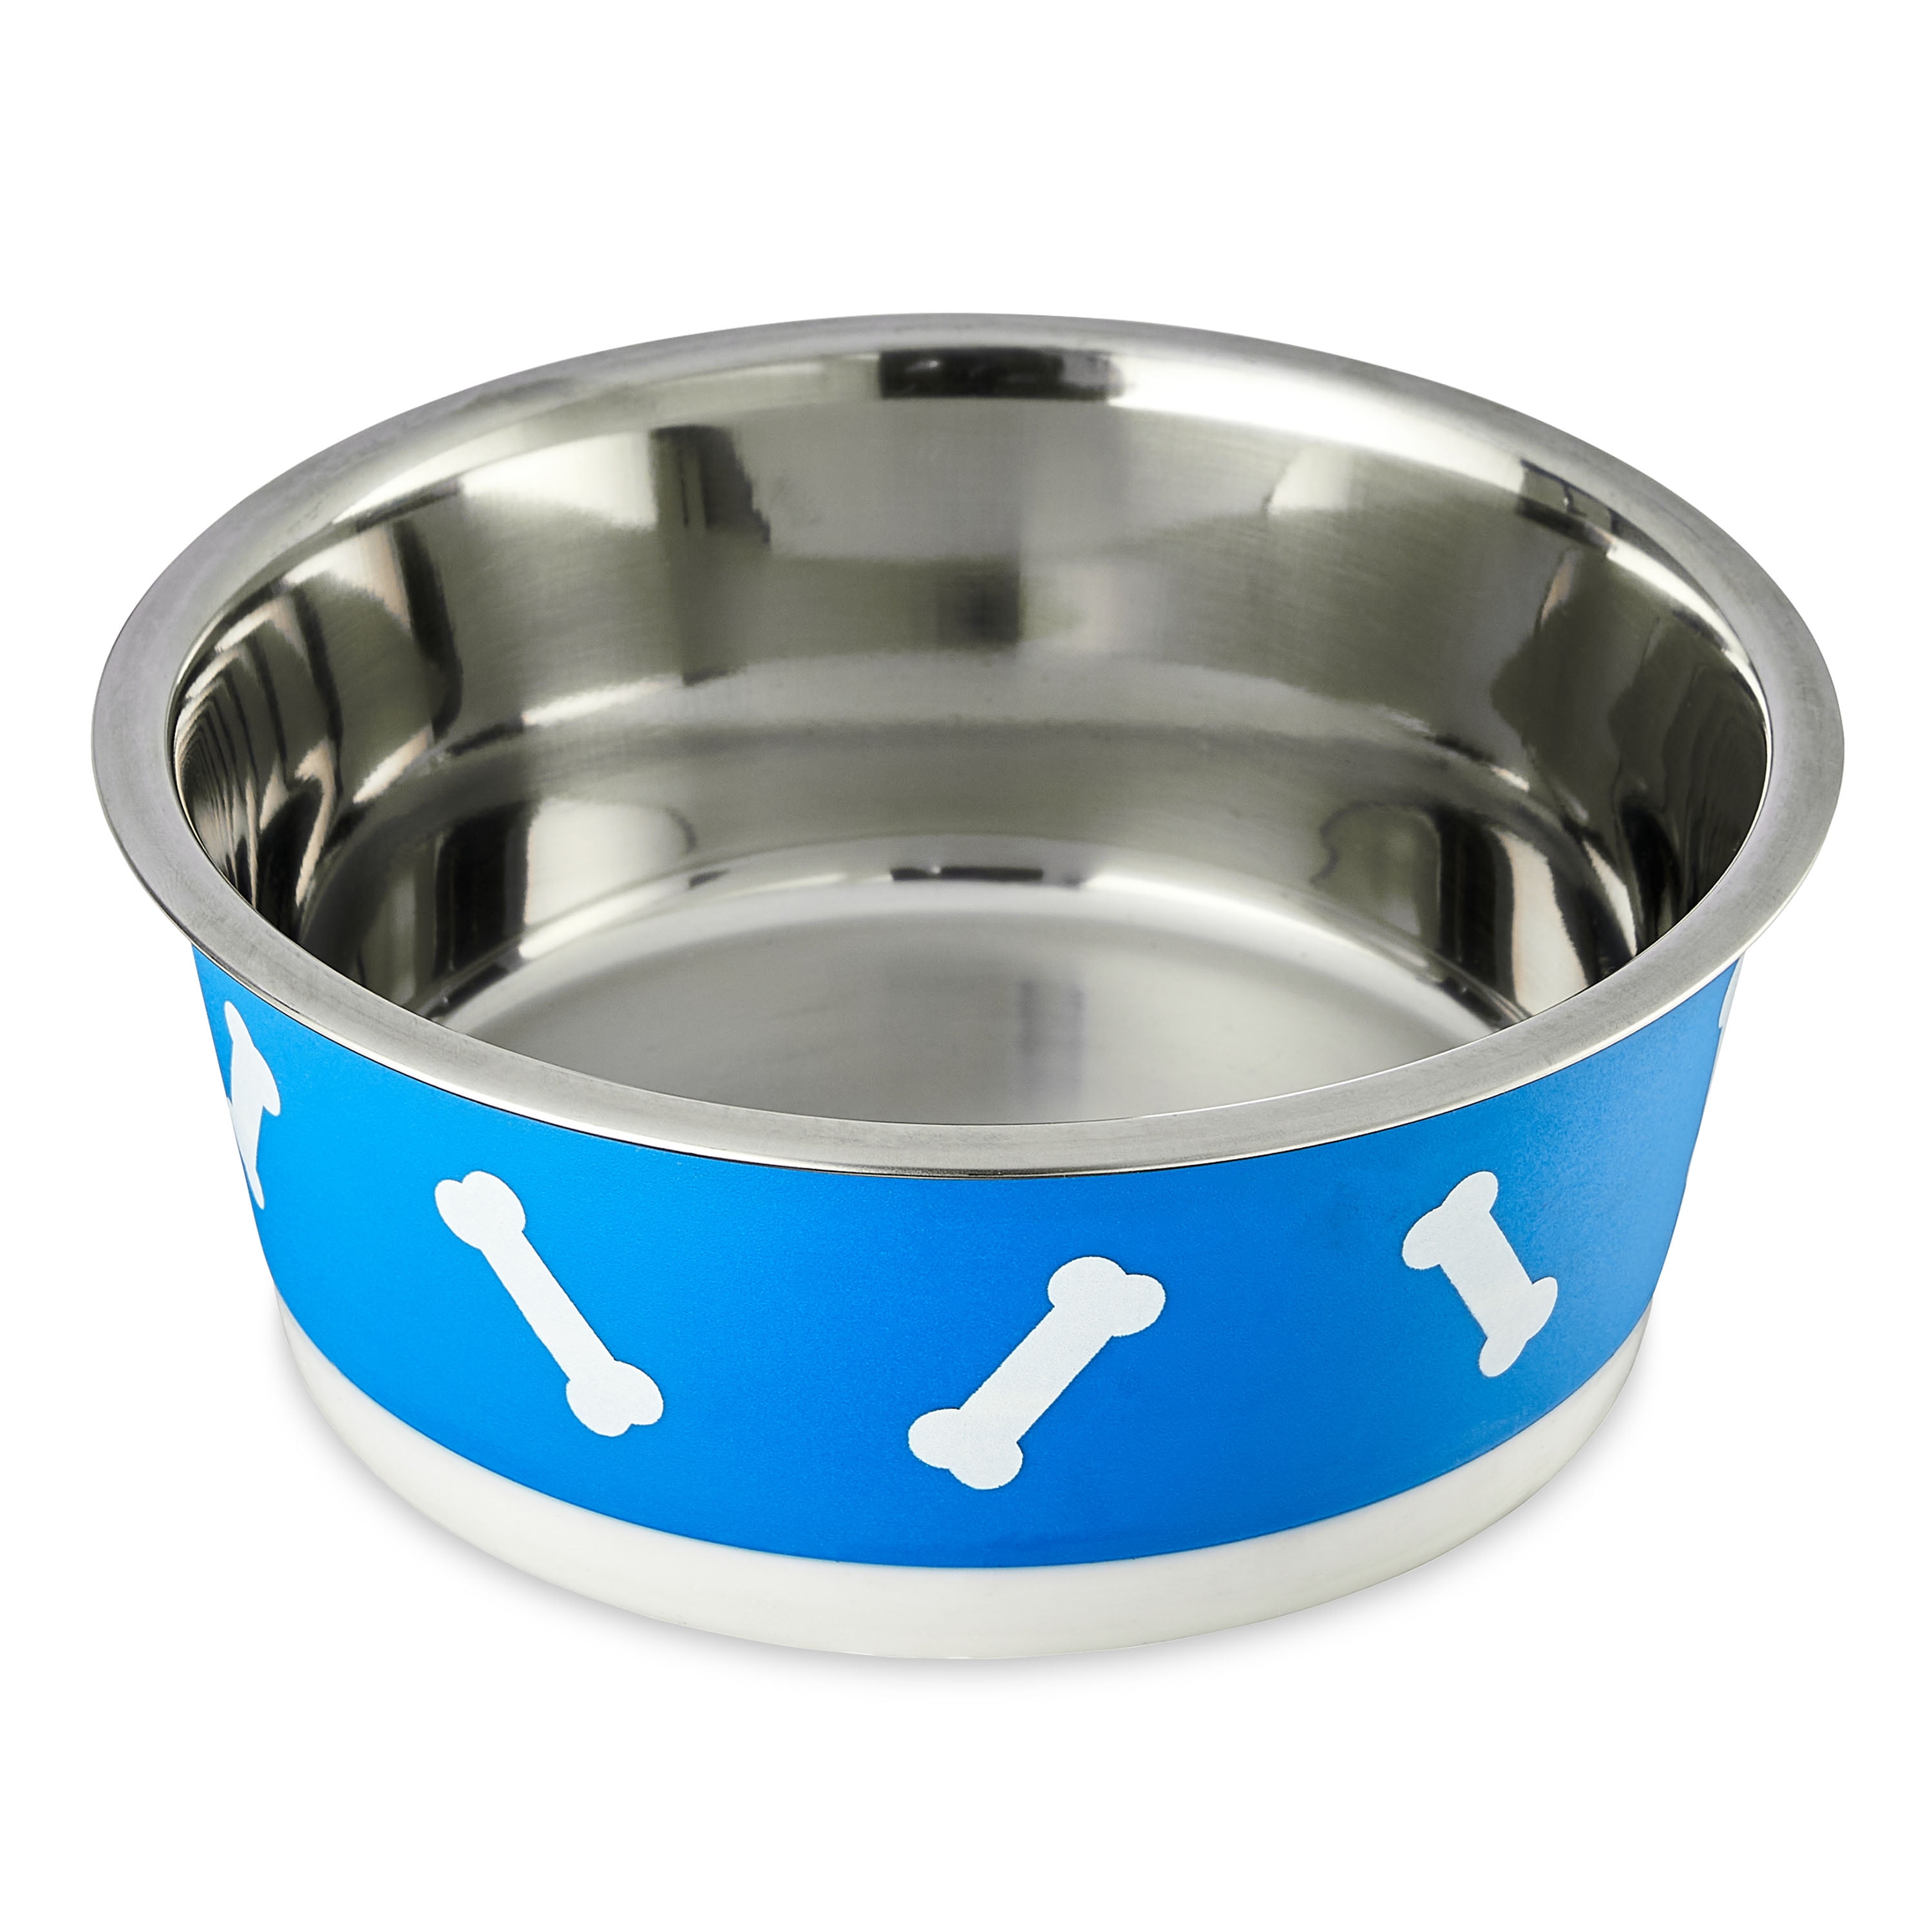 Vibrant Life Medium Stainless Steel Dog Bowl, Blue, 24 Fluid Ounce Capacity